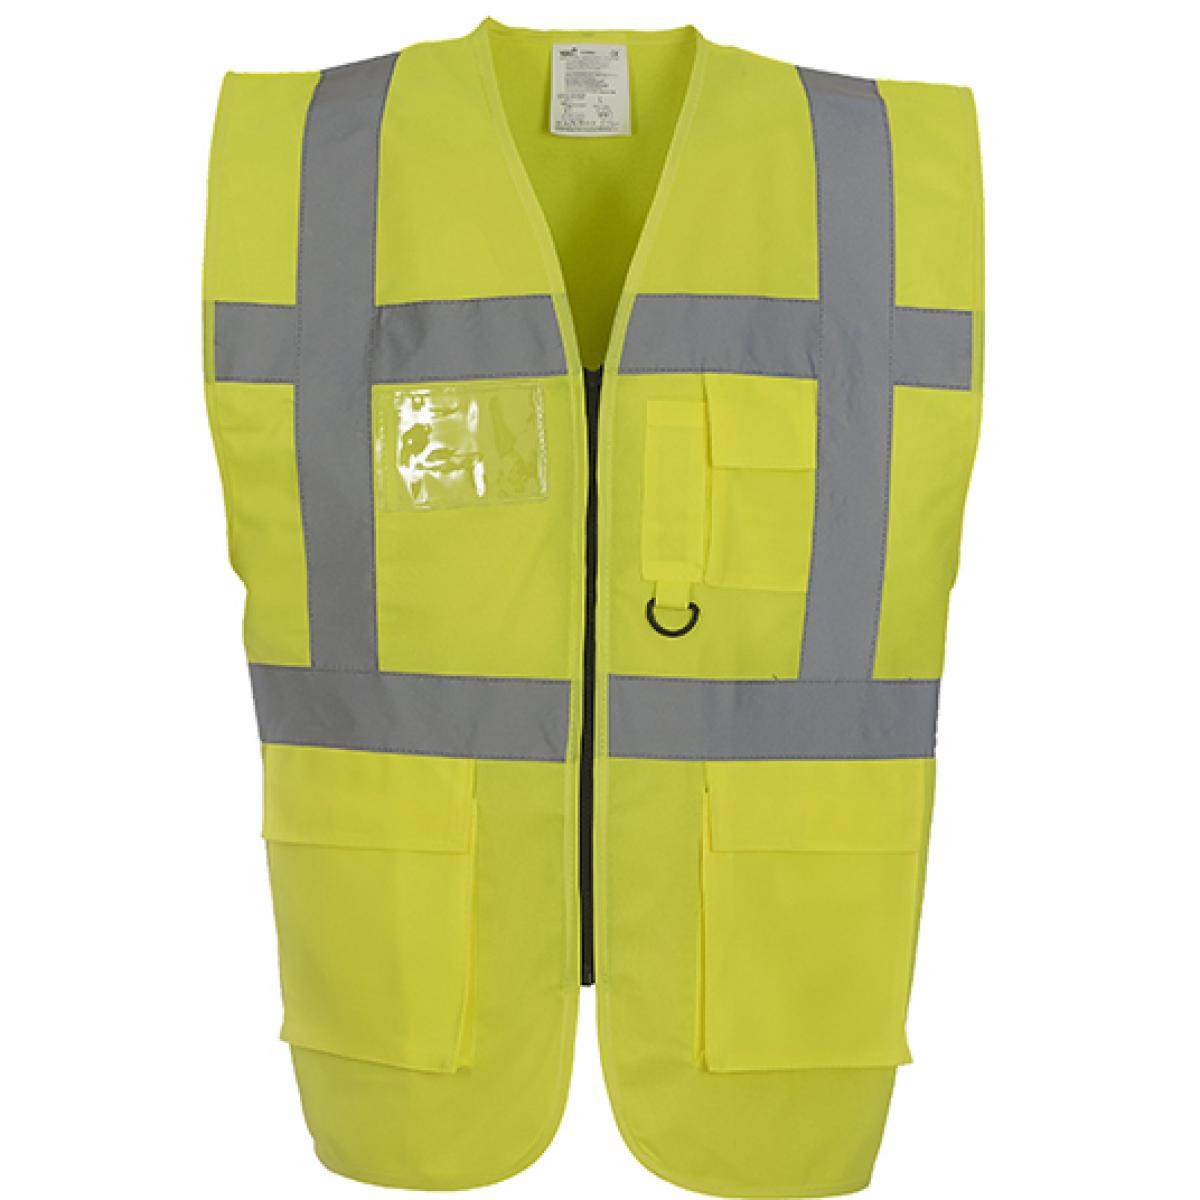 Hersteller: YOKO Herstellernummer: HVW801 Artikelbezeichnung: Herren Multi-Functional Executive Waistcoat Farbe: Hi-Vis Yellow